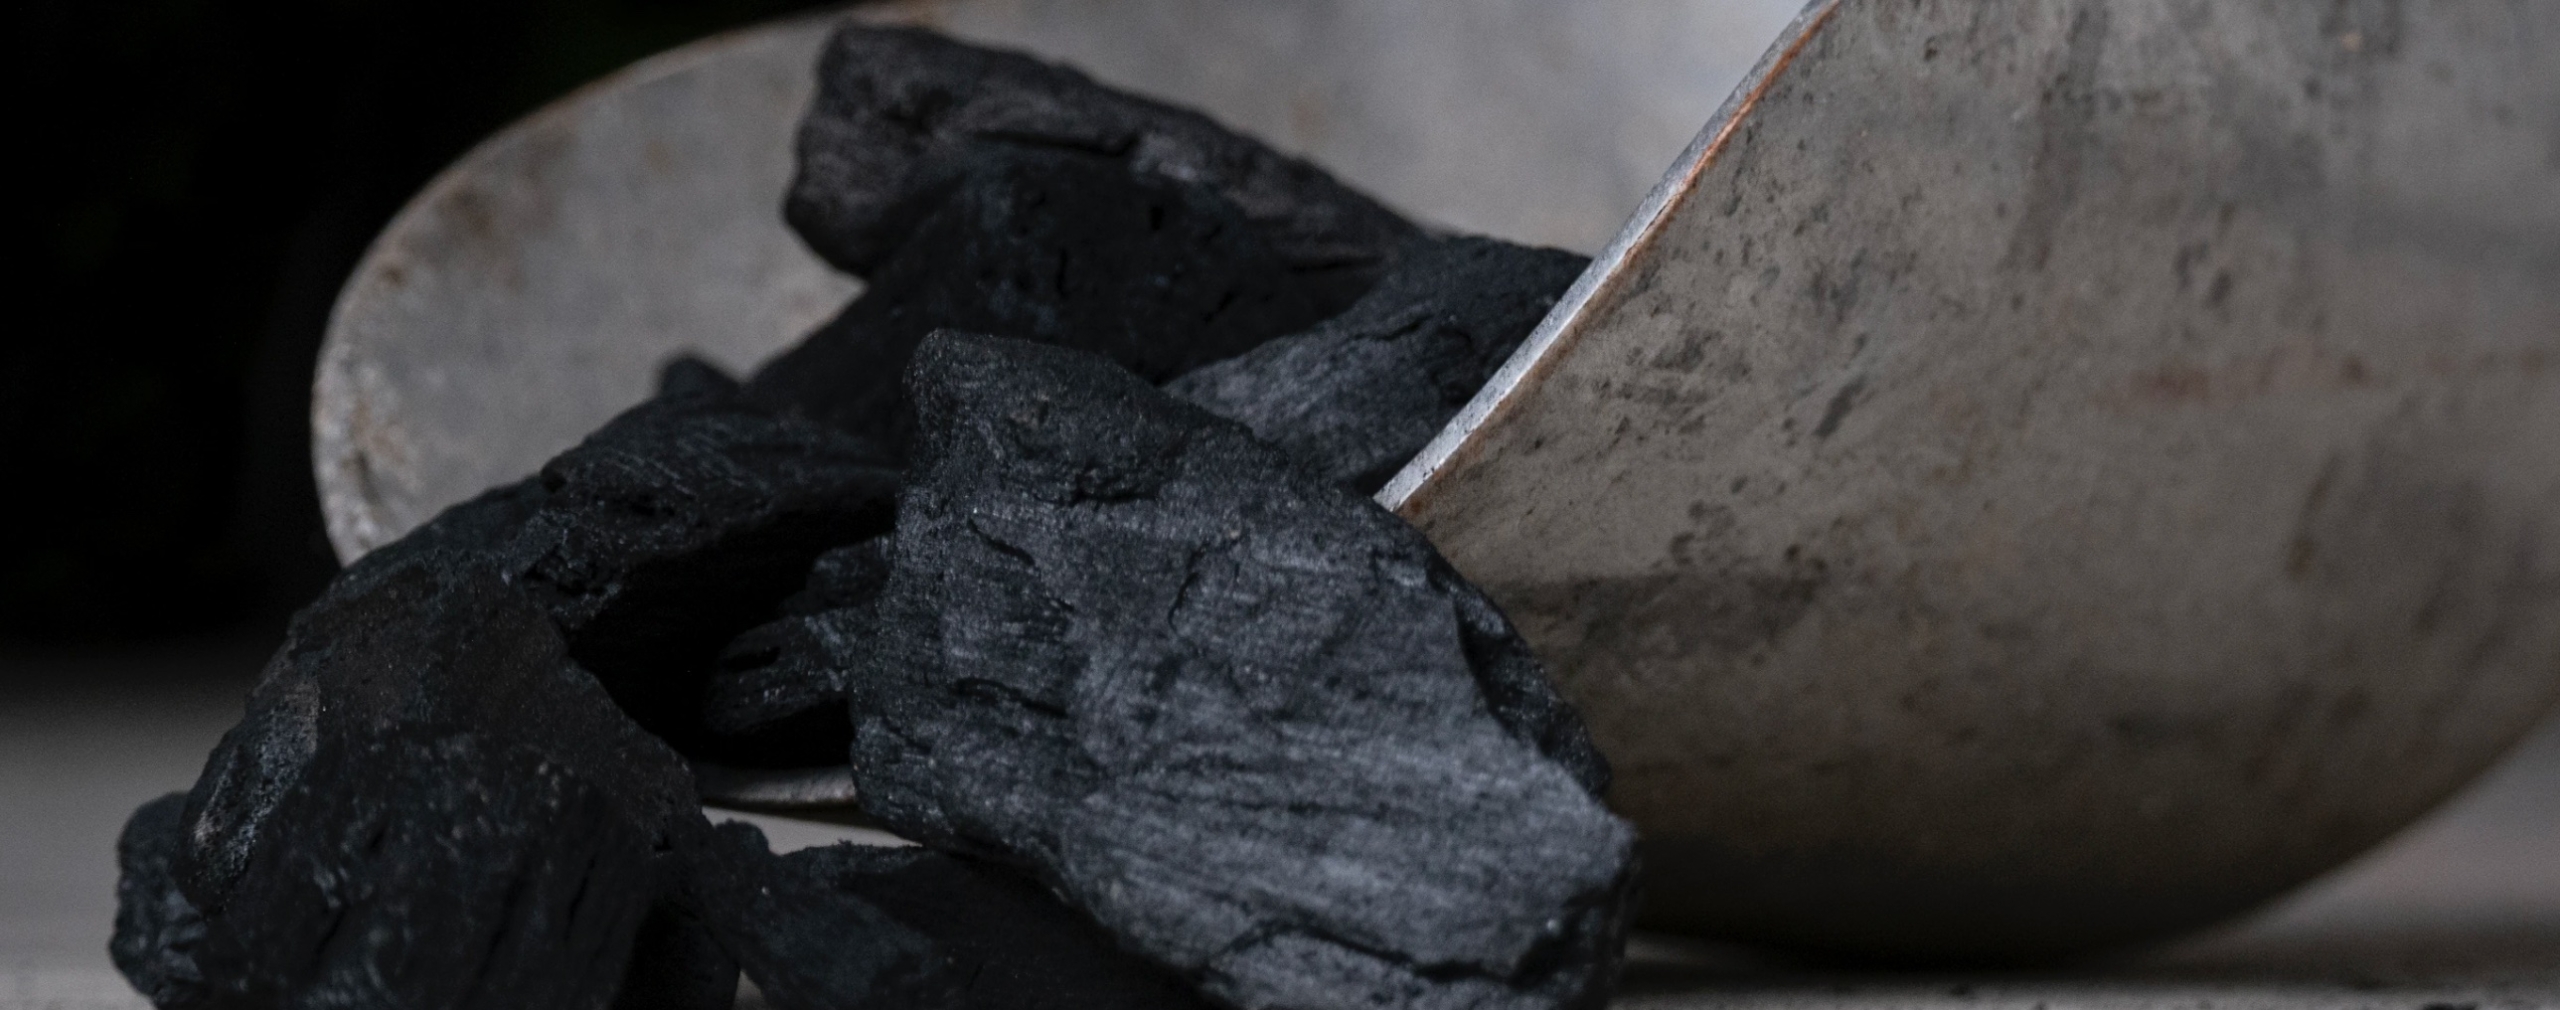 Угольная промышленность близка к коллапсу: как это скажется на бюджете